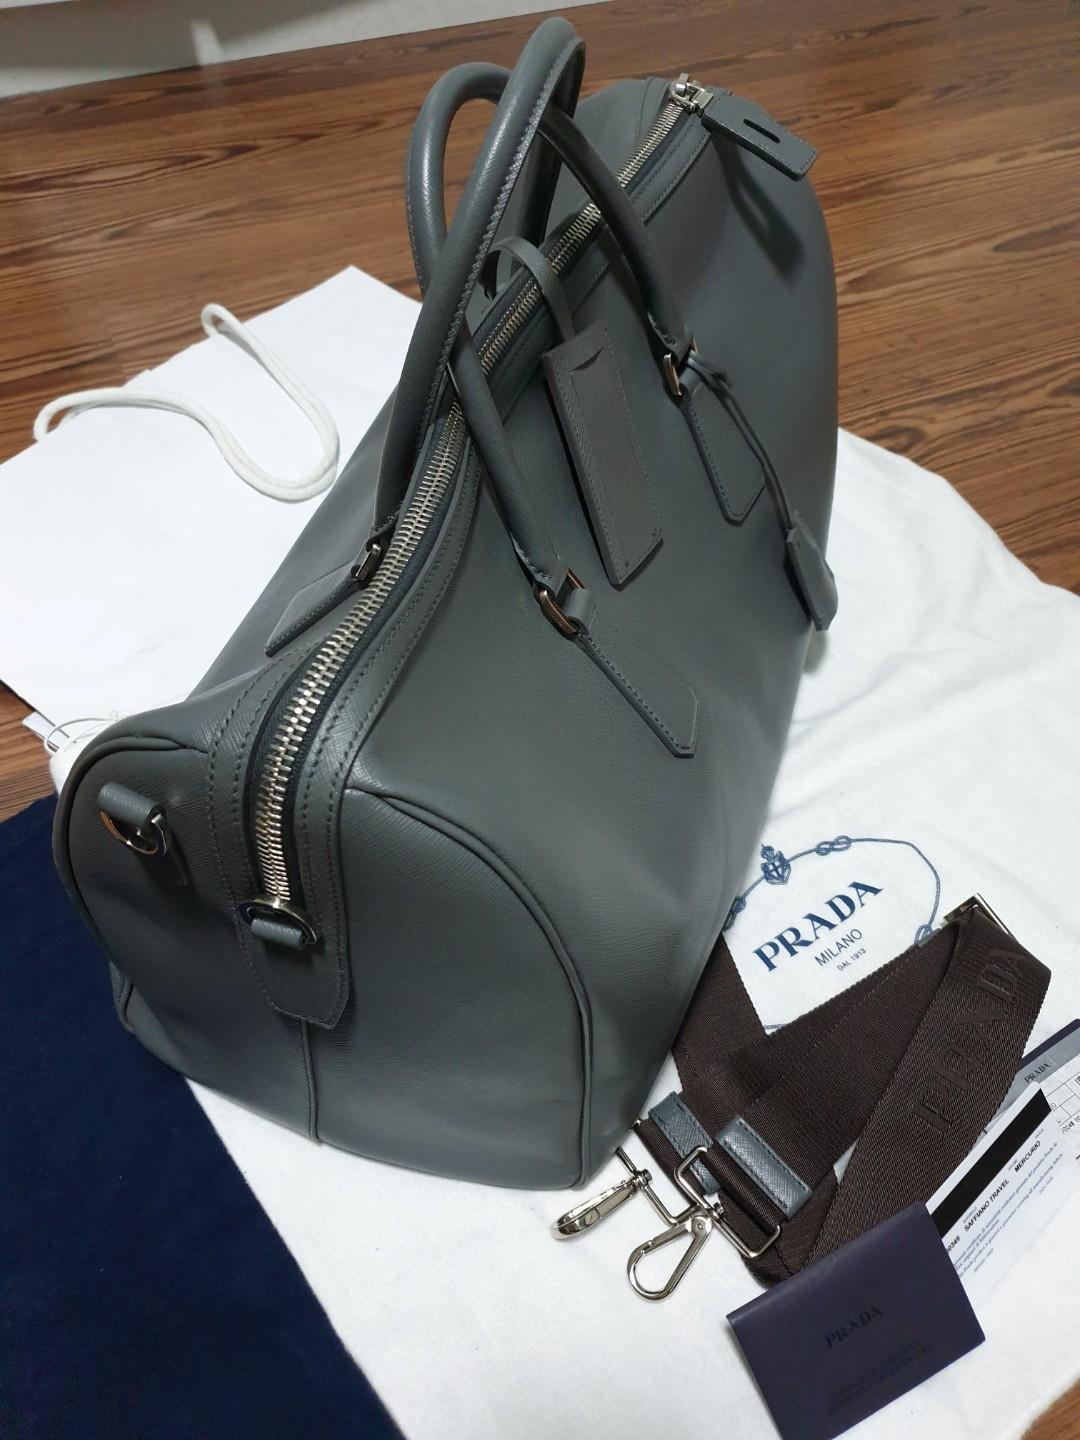 Rare Pre-loved Authentic Prada Mercurio Saffiano Leather Travel Bag ...